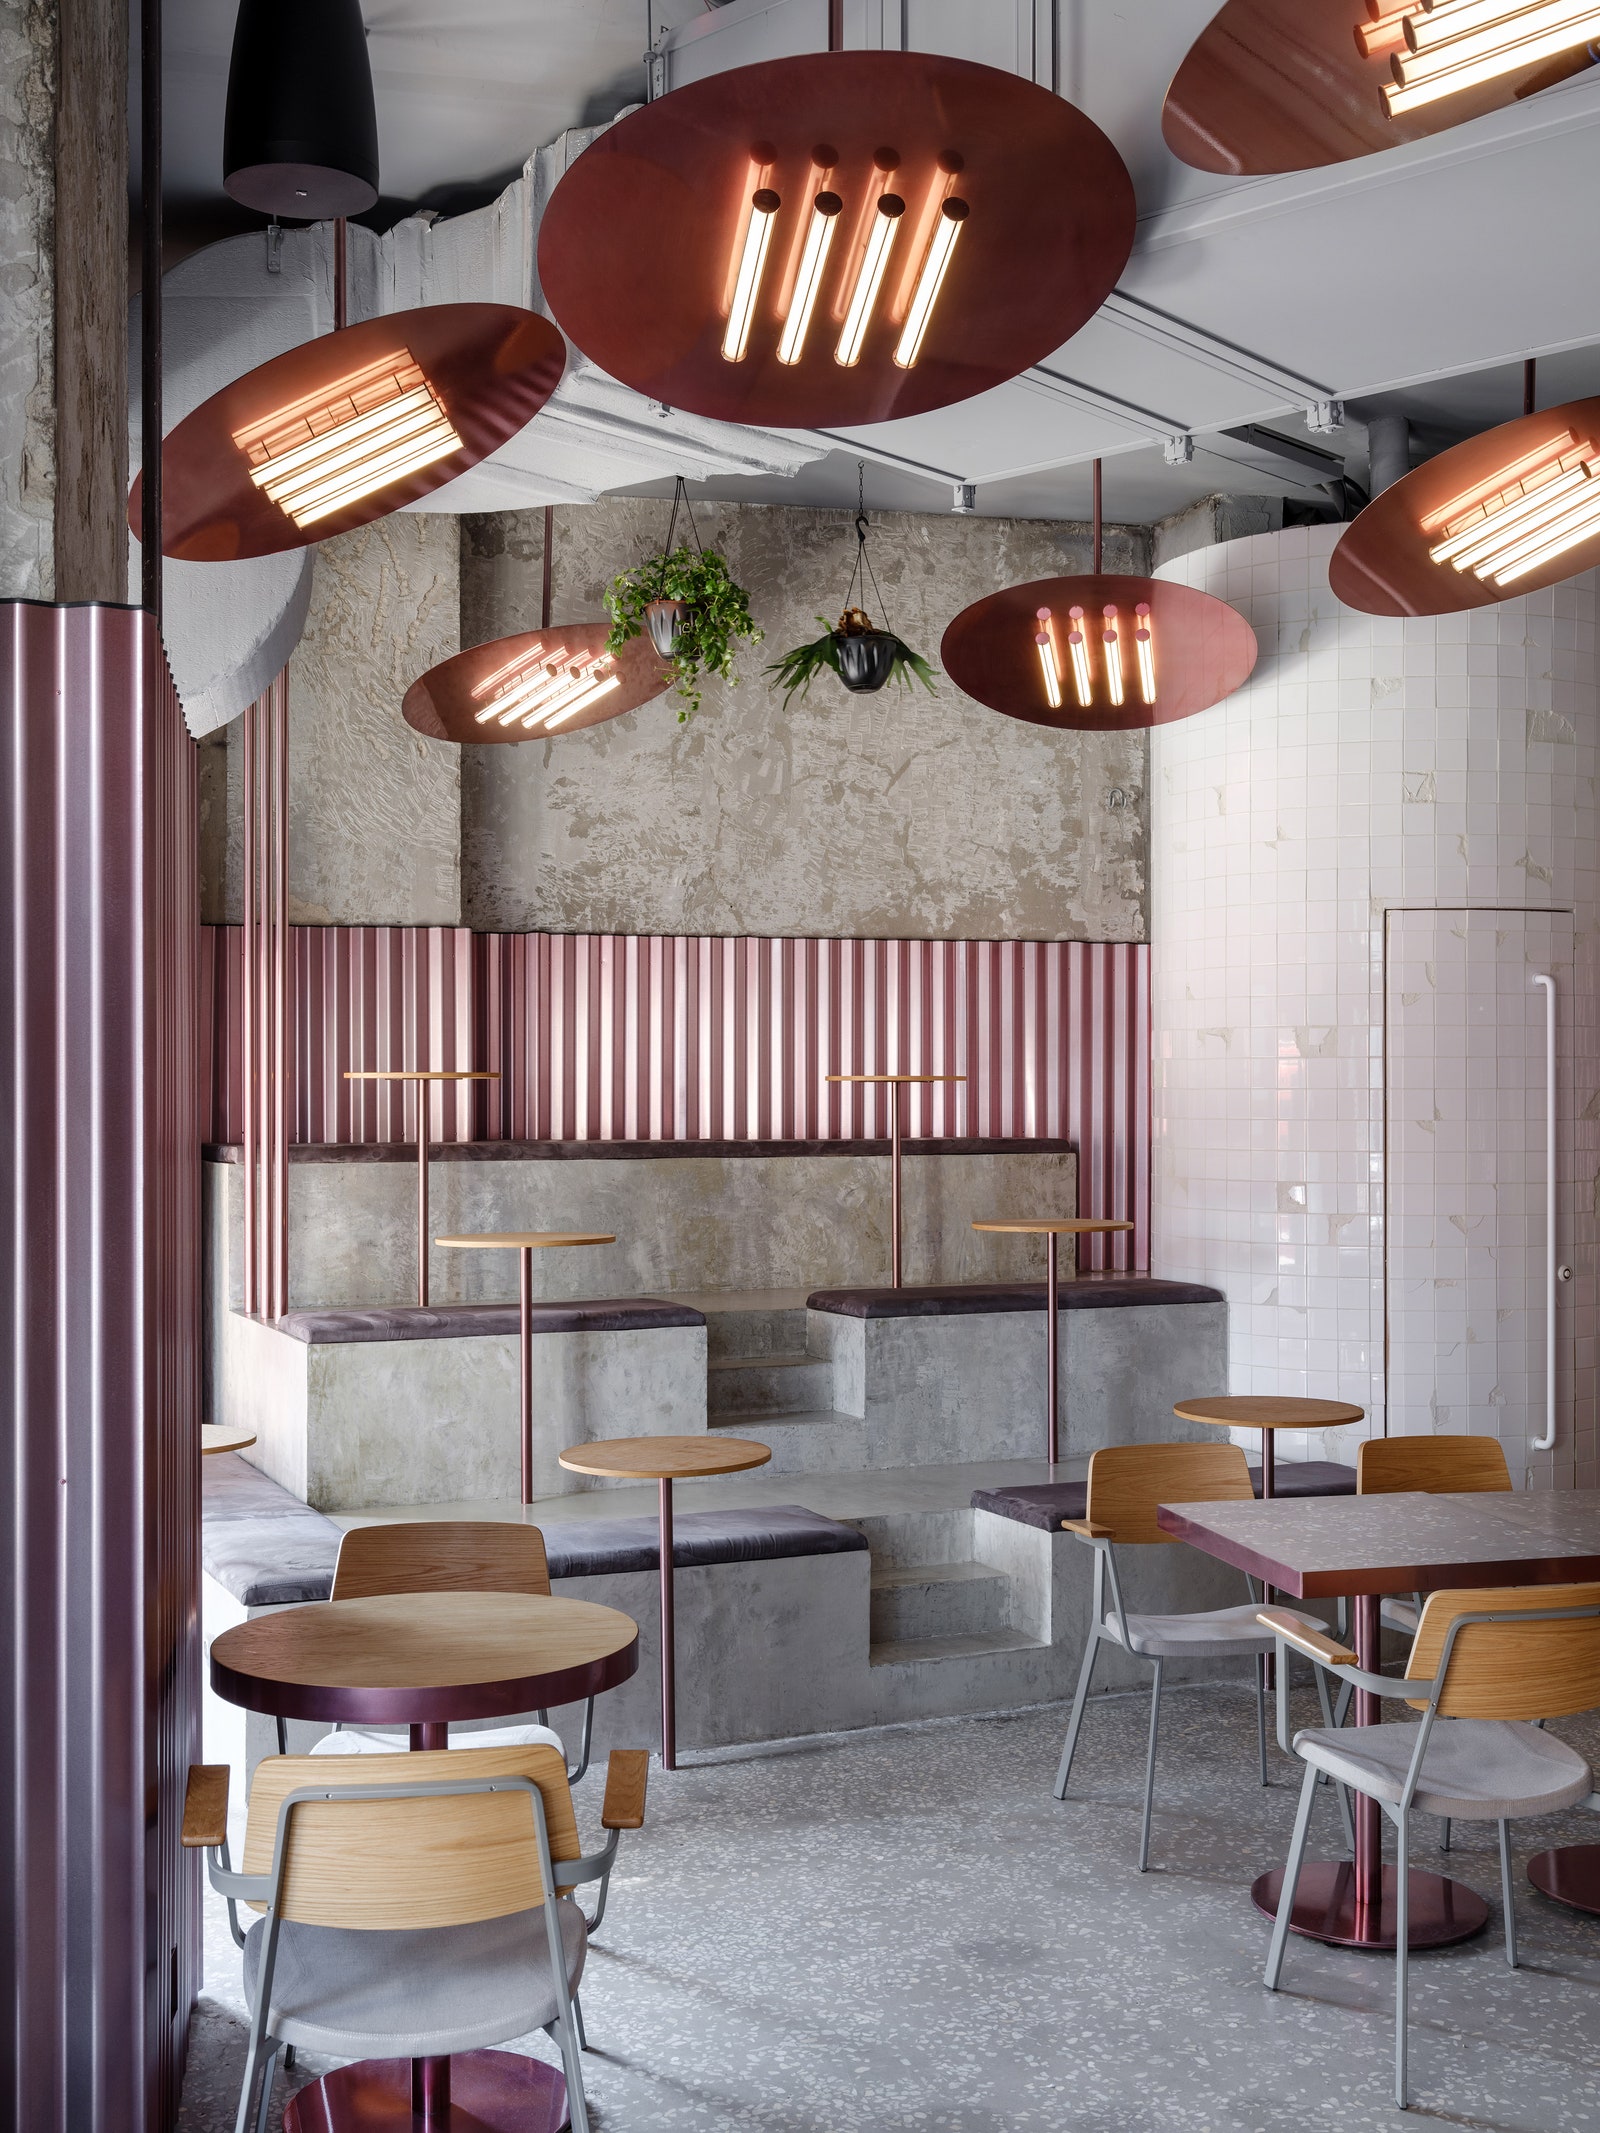 Ресторан Rare Pastrami Bar в Милютинском переулке по проекту Гарри Нуриева